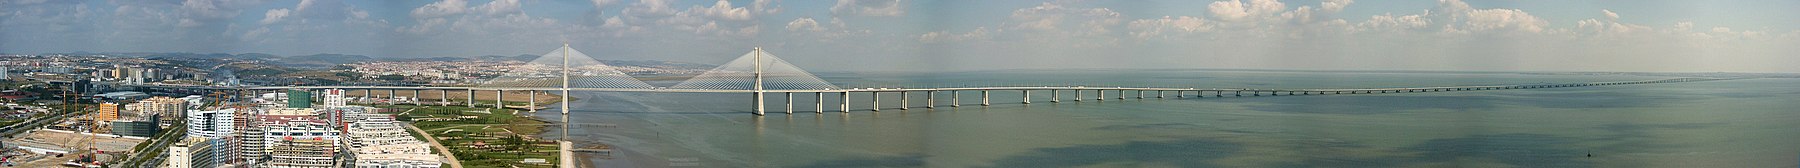 Panorama mostu z Wieży Vasco da Gama